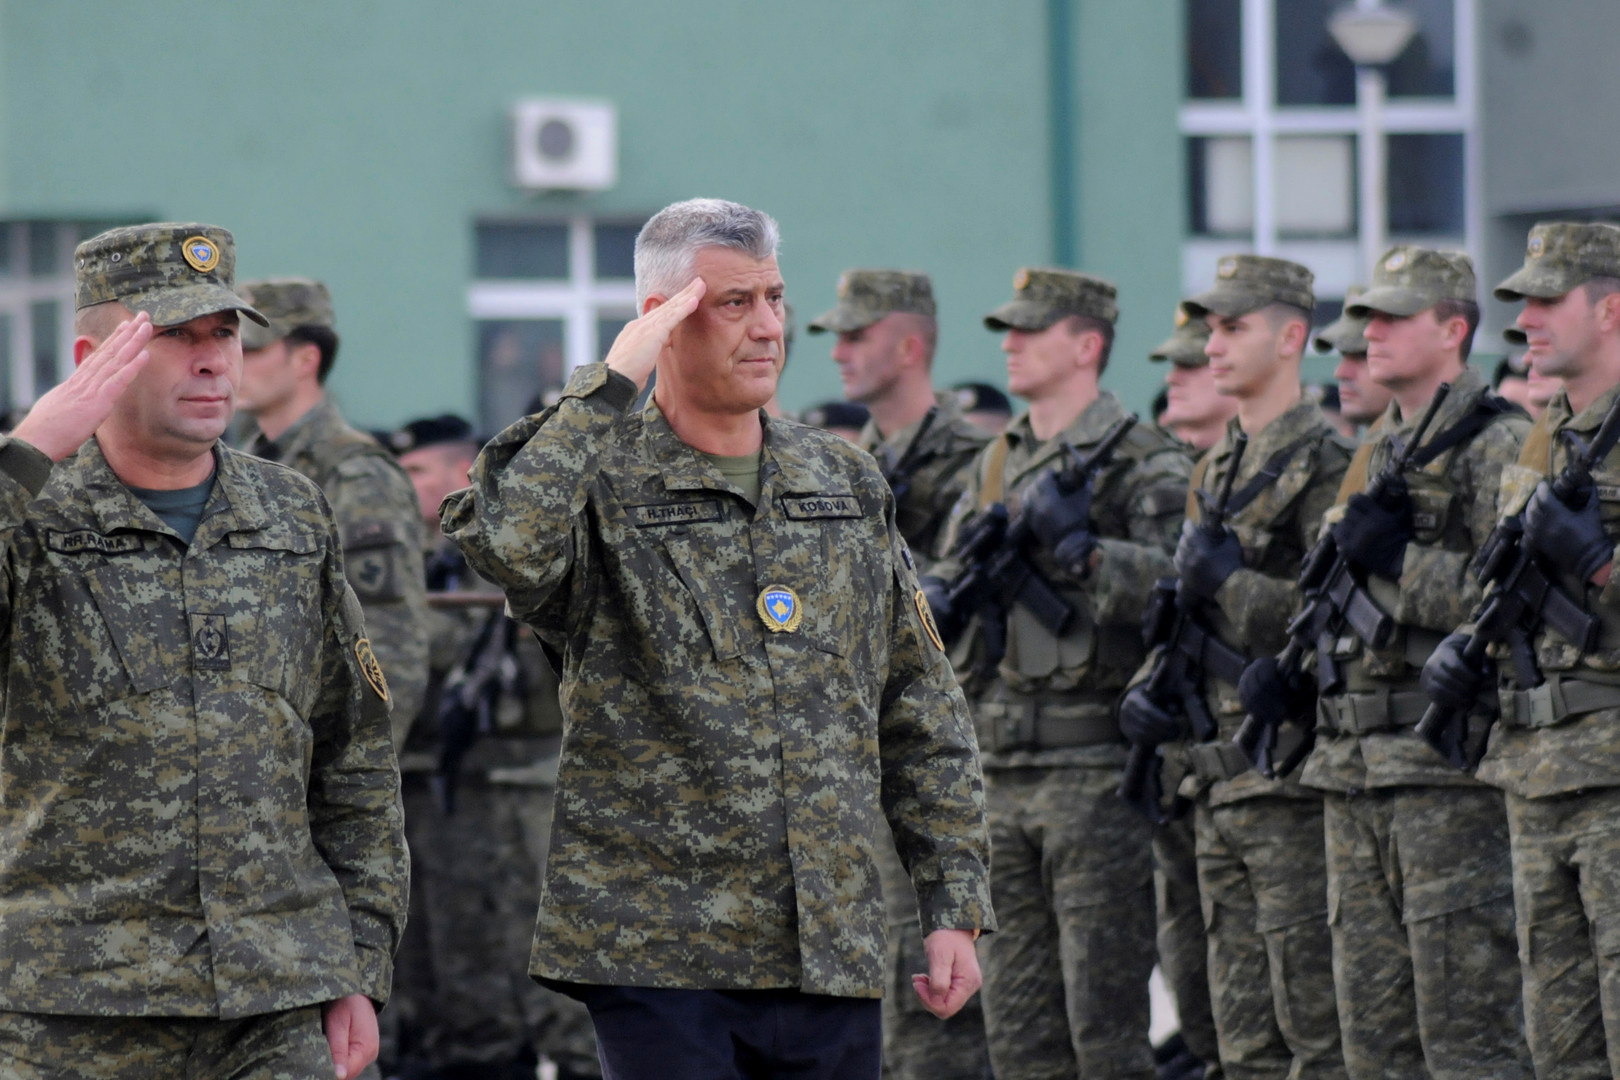 UN-Sicherheitsrat: Russland fordert sofortige Auflösung der Kosovo-Armee